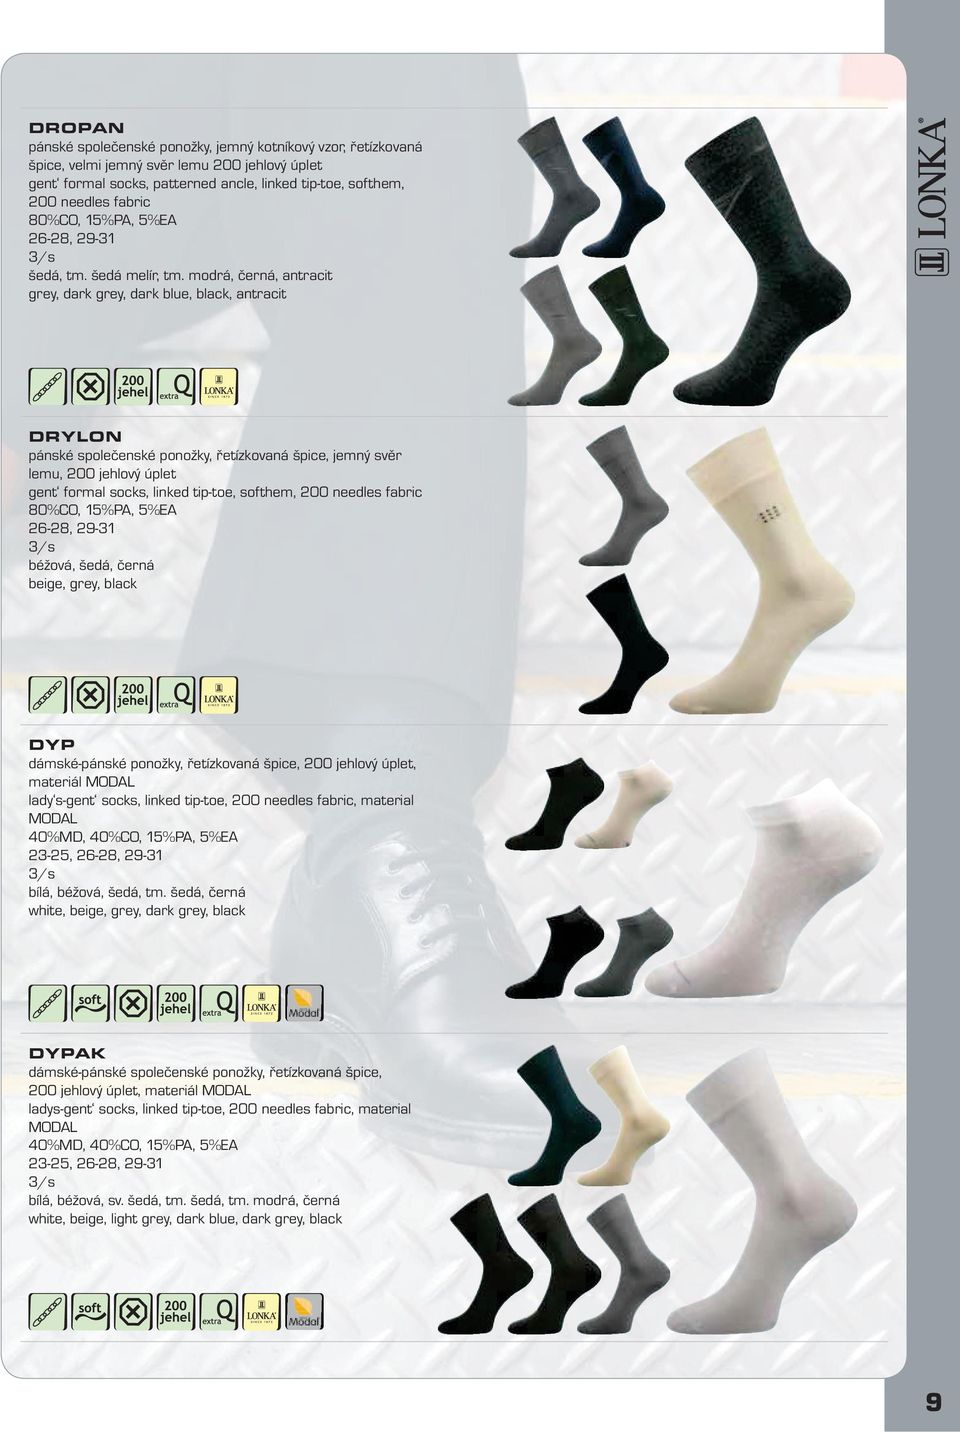 černá beige, grey, black DYP dámské-pánské ponožky,, materiál MODL lady s-gent socks, linked tip-toe,, material MODL 40%MD, 40%CO, 15%P, 5%E 23-25, bílá, béžová, šedá, tm.